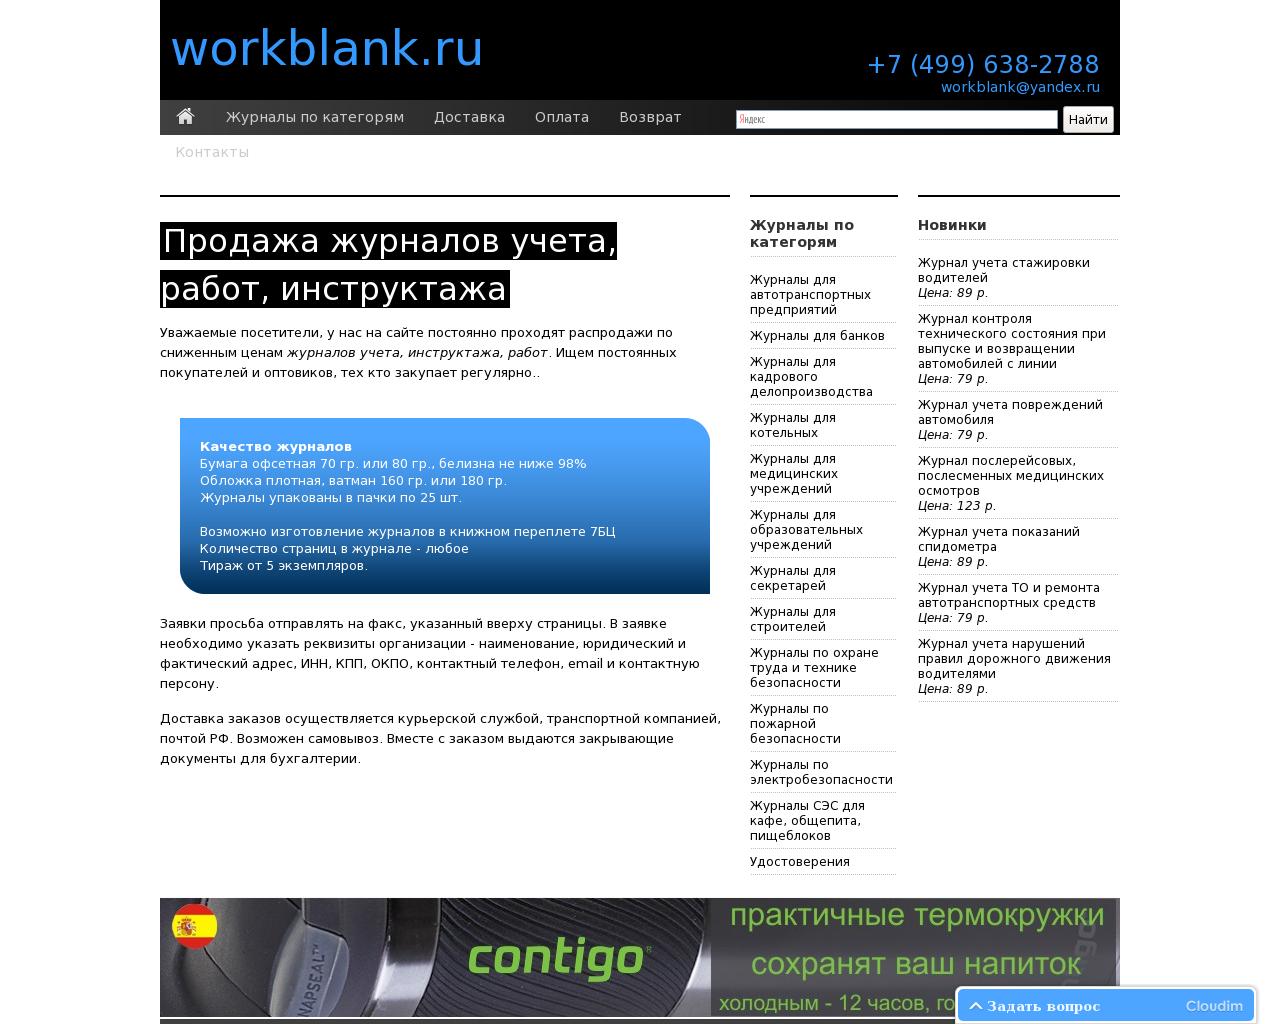 Изображение сайта workblank.ru в разрешении 1280x1024